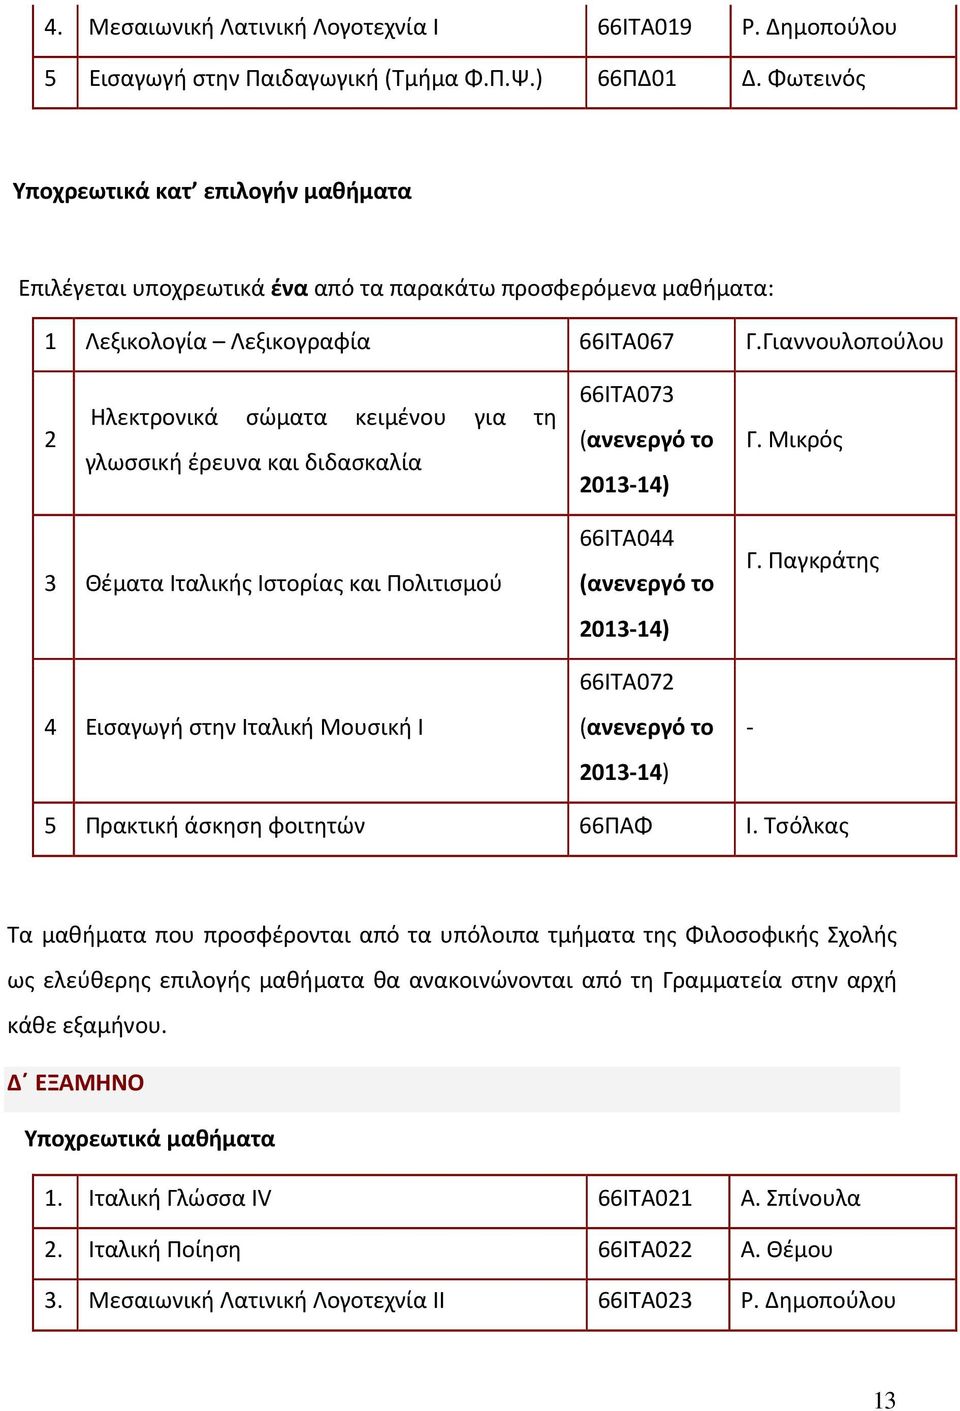 Γιαννουλοπούλου 2 Ηλεκτρονικά σώματα κειμένου για τη γλωσσική έρευνα και διδασκαλία 66ΙΤΑ073 (ανενεργό το 2013-14) Γ.